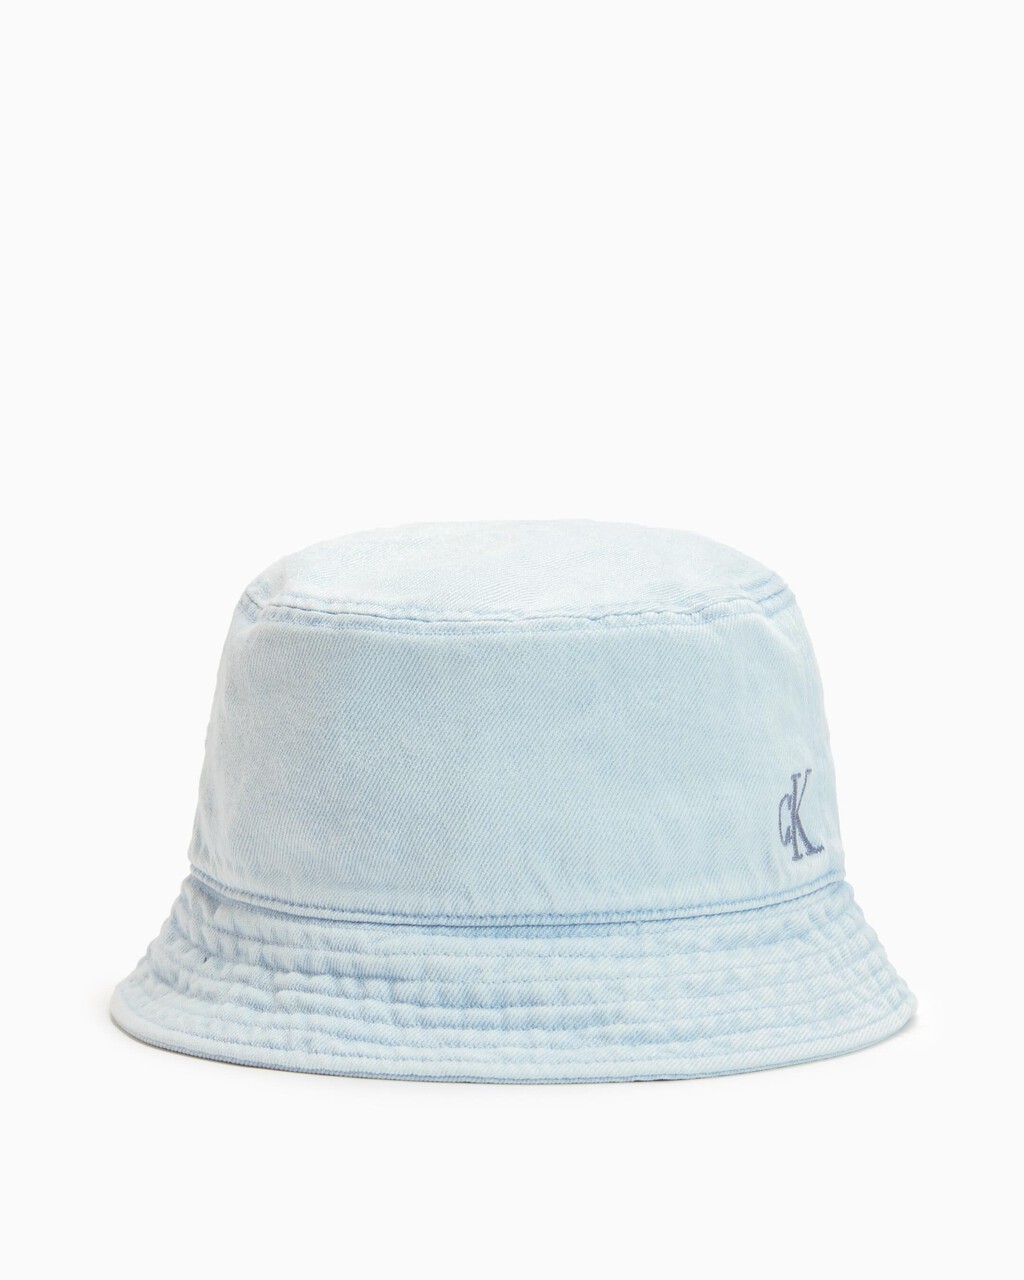 Washed Denim Monogram Bucket Hat, LIGHT WASH DENI, hi-res